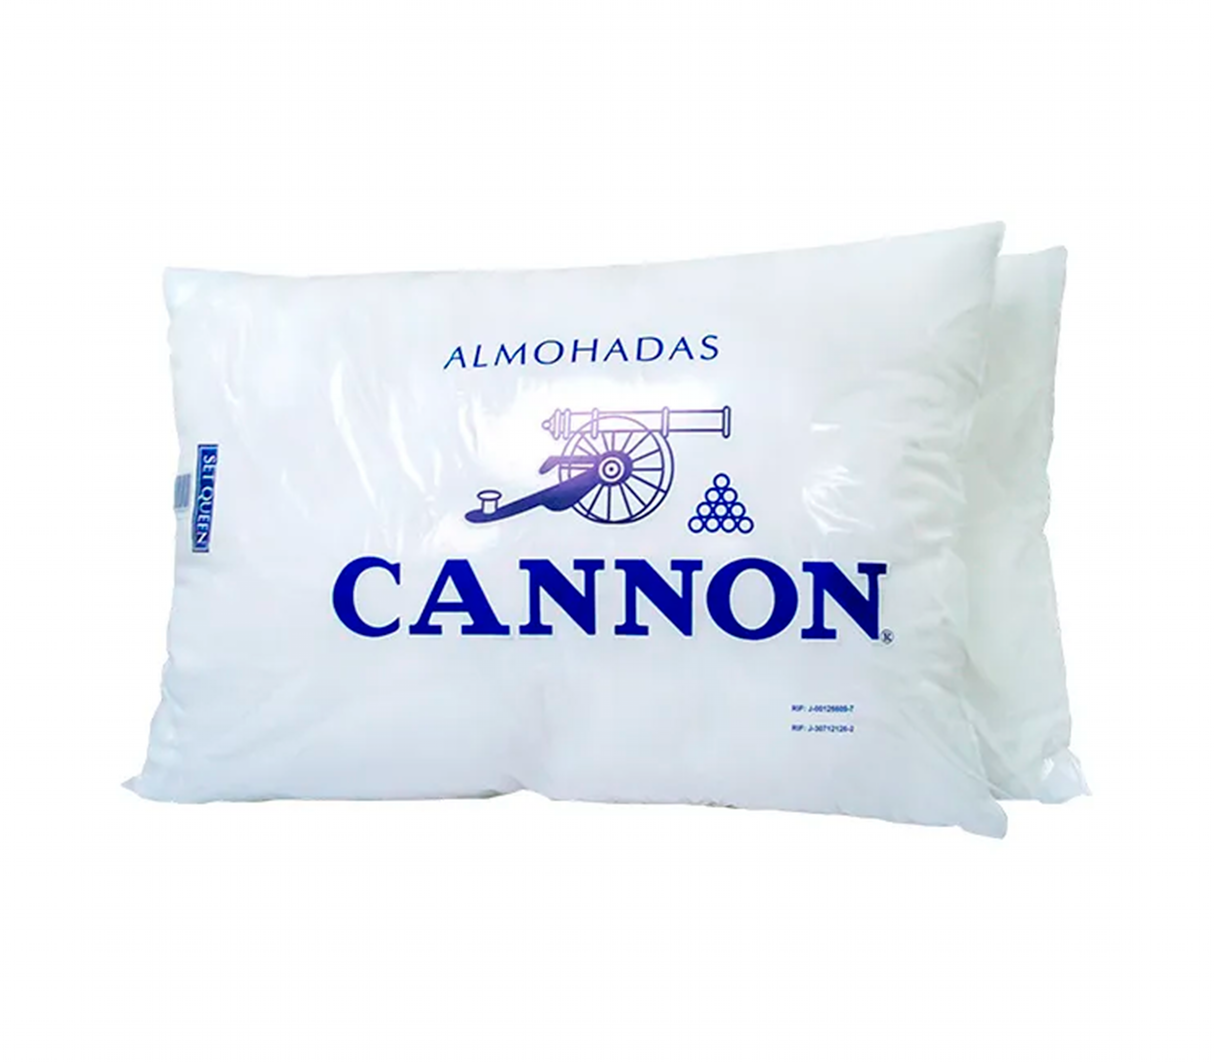 Almohada Cannon